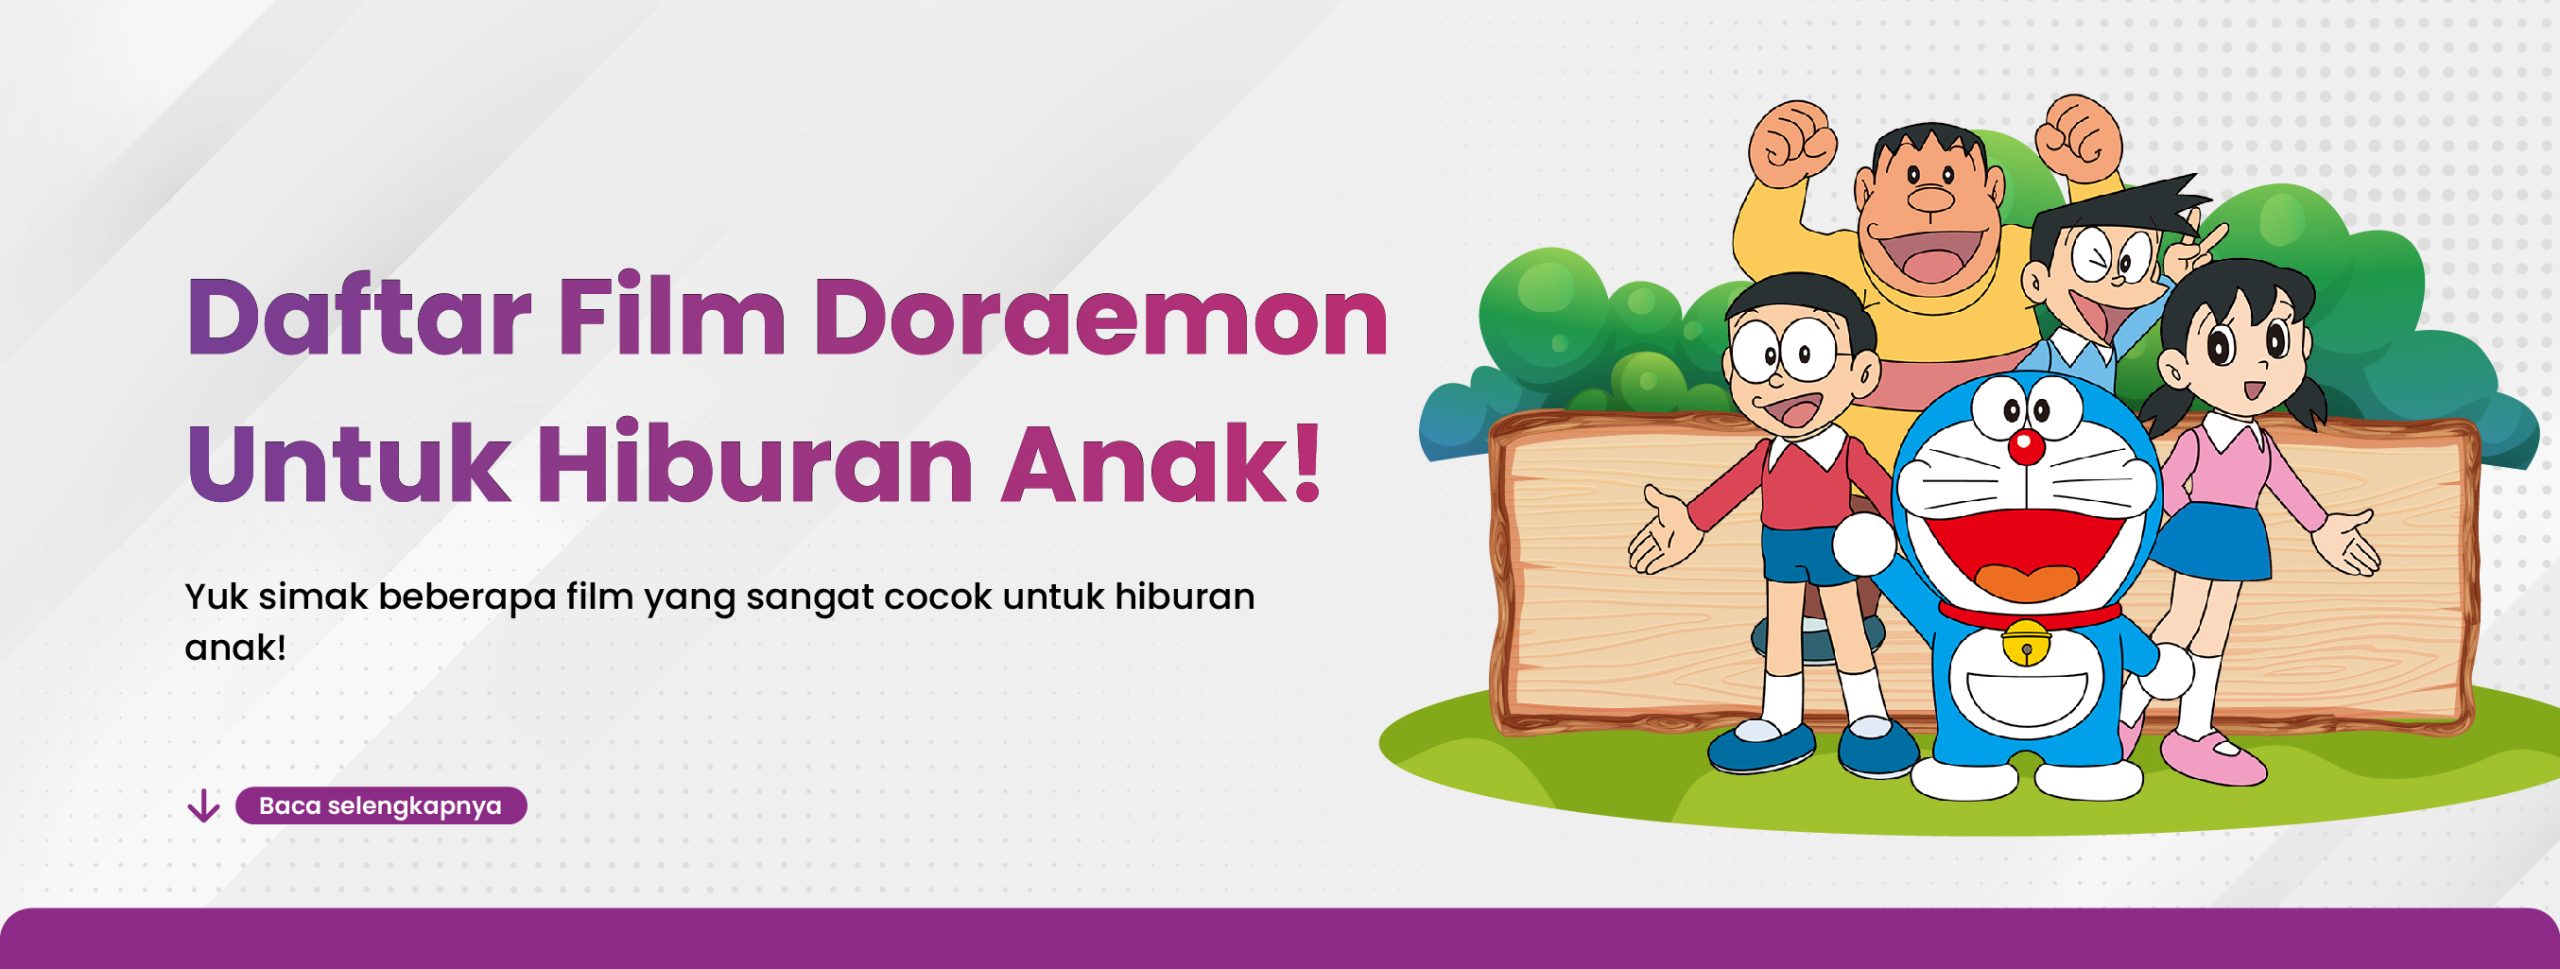 Daftar Film Doraemon Untuk Hiburan Anak!